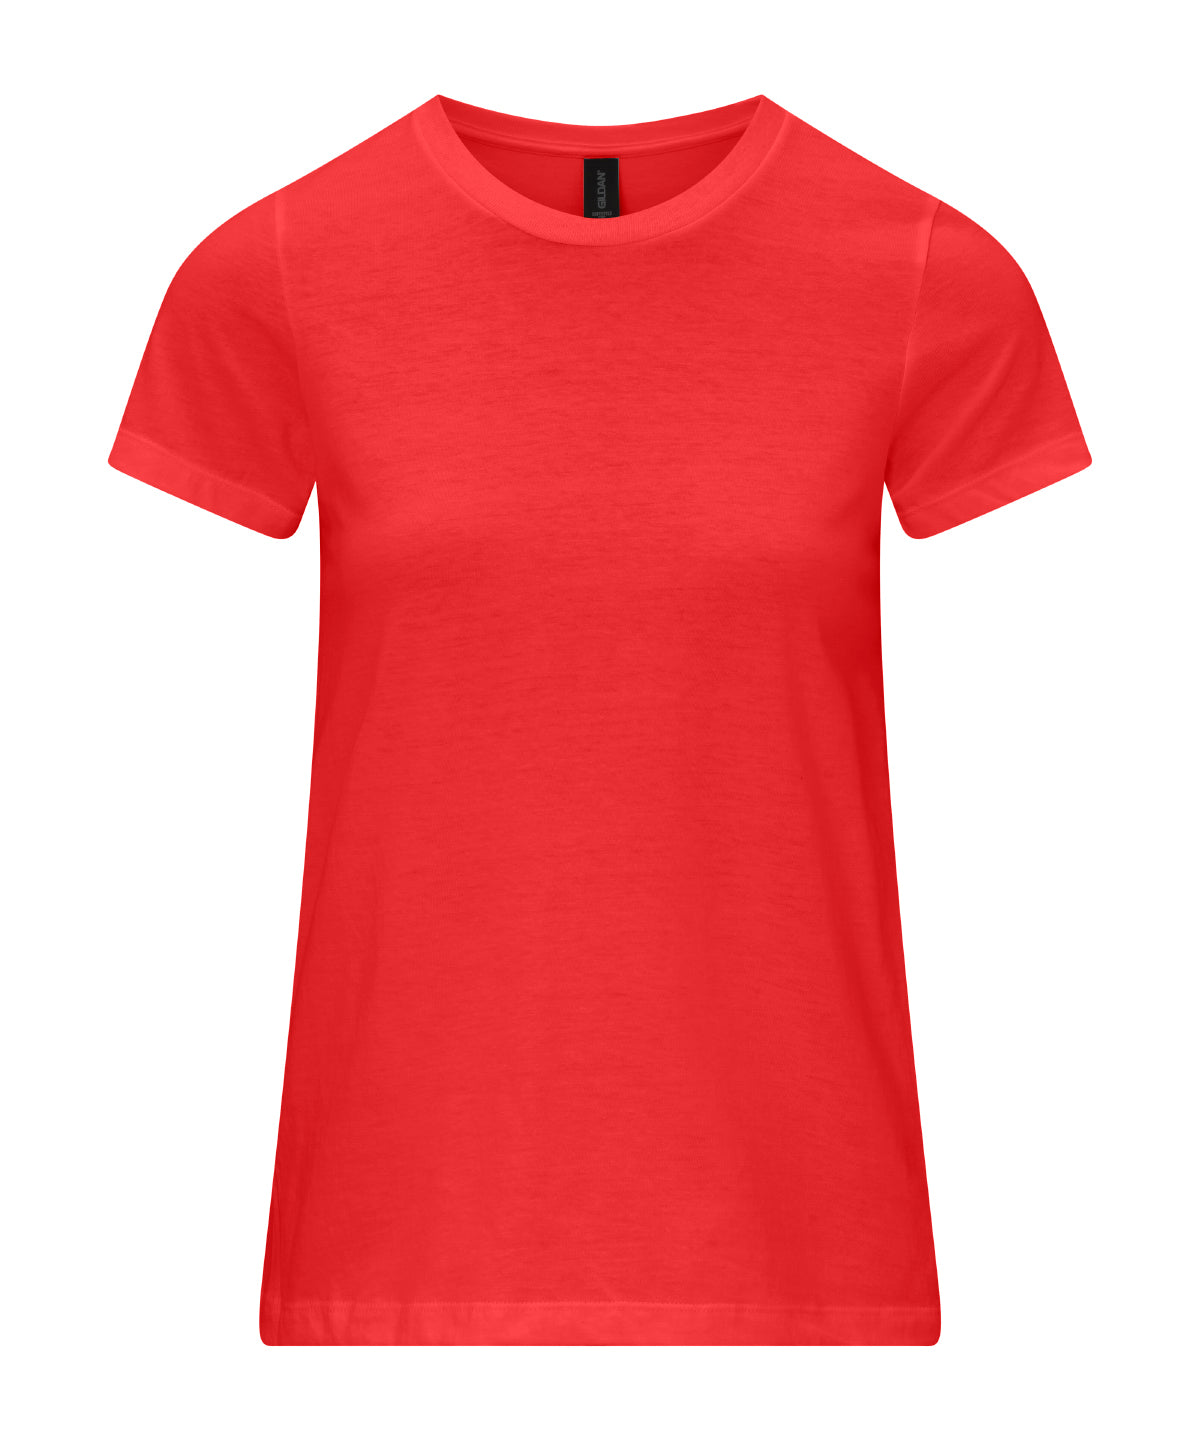 Gildan Softstyle CVC women’s t-shirt